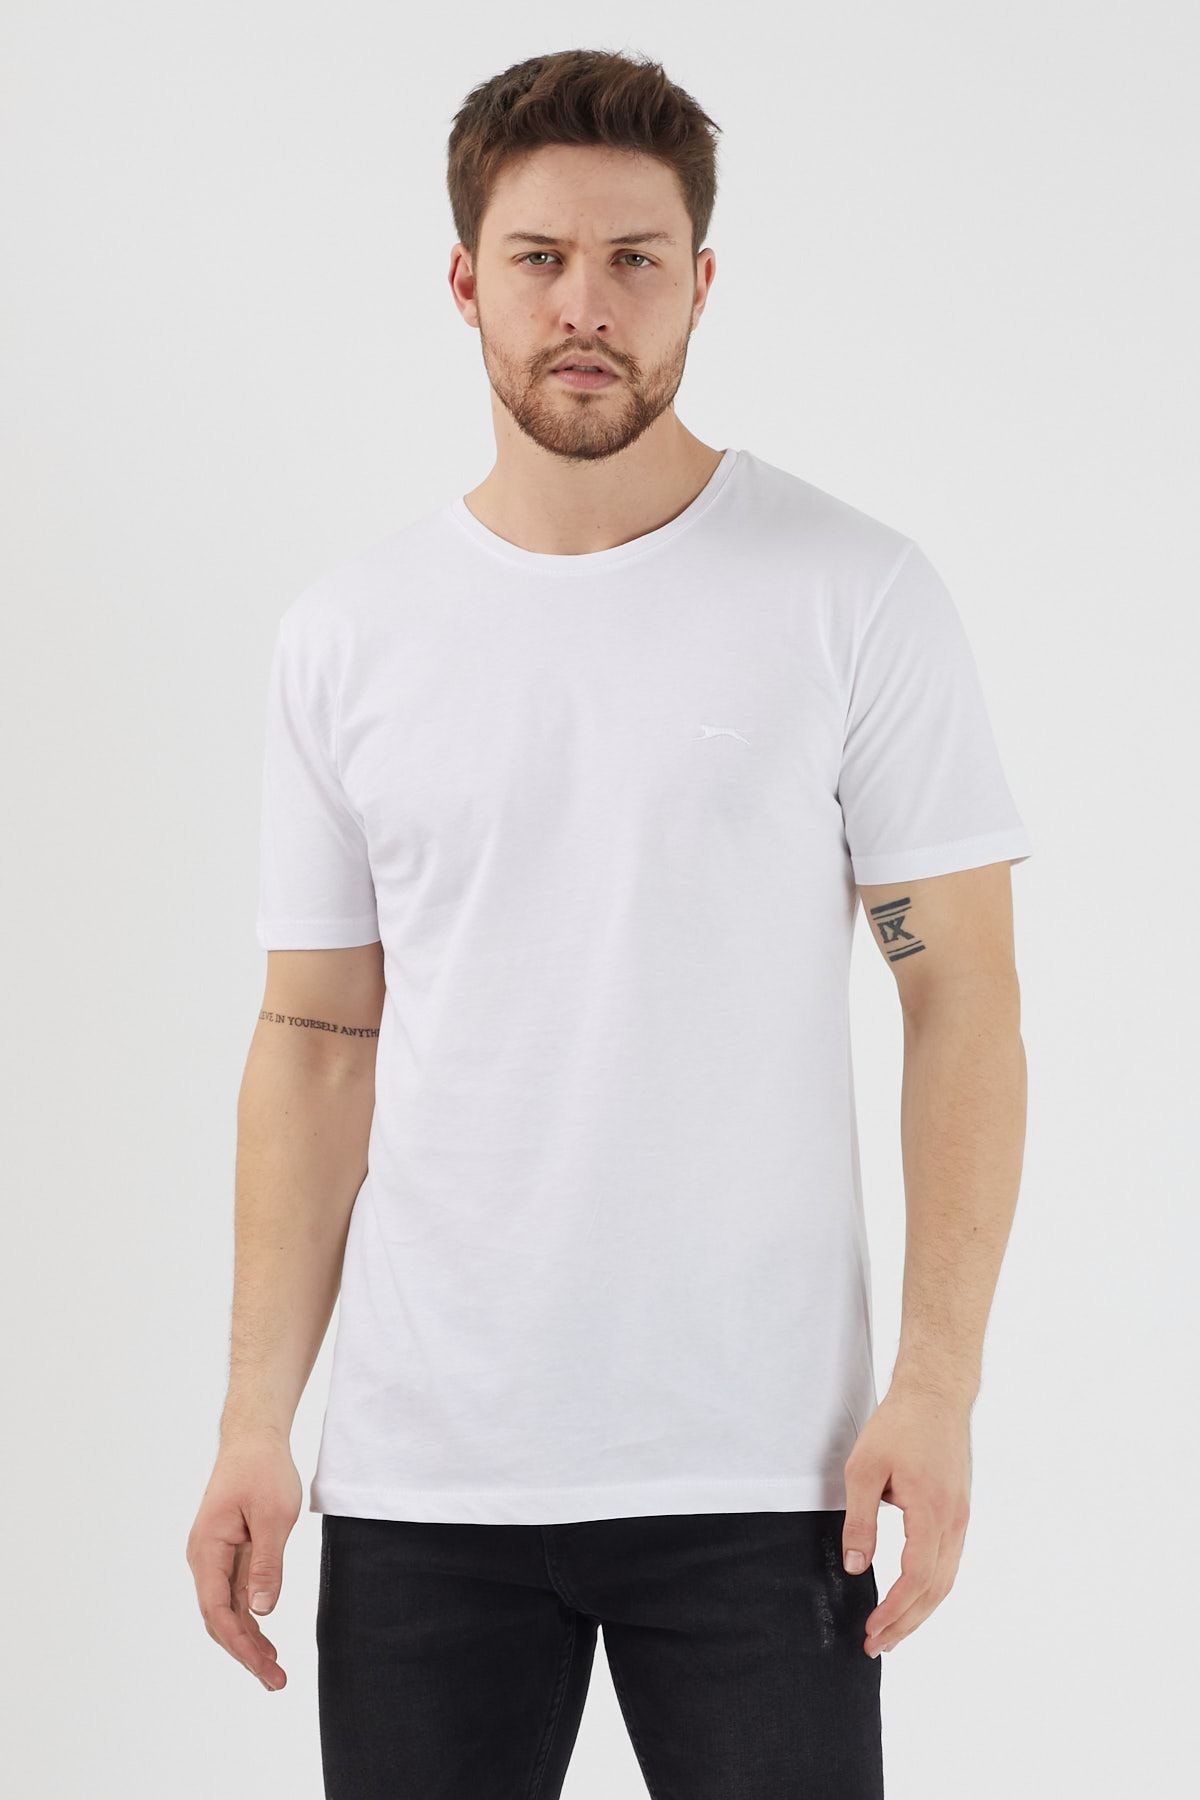 Slazenger Sander Erkek T-shirt Beyaz St11te083